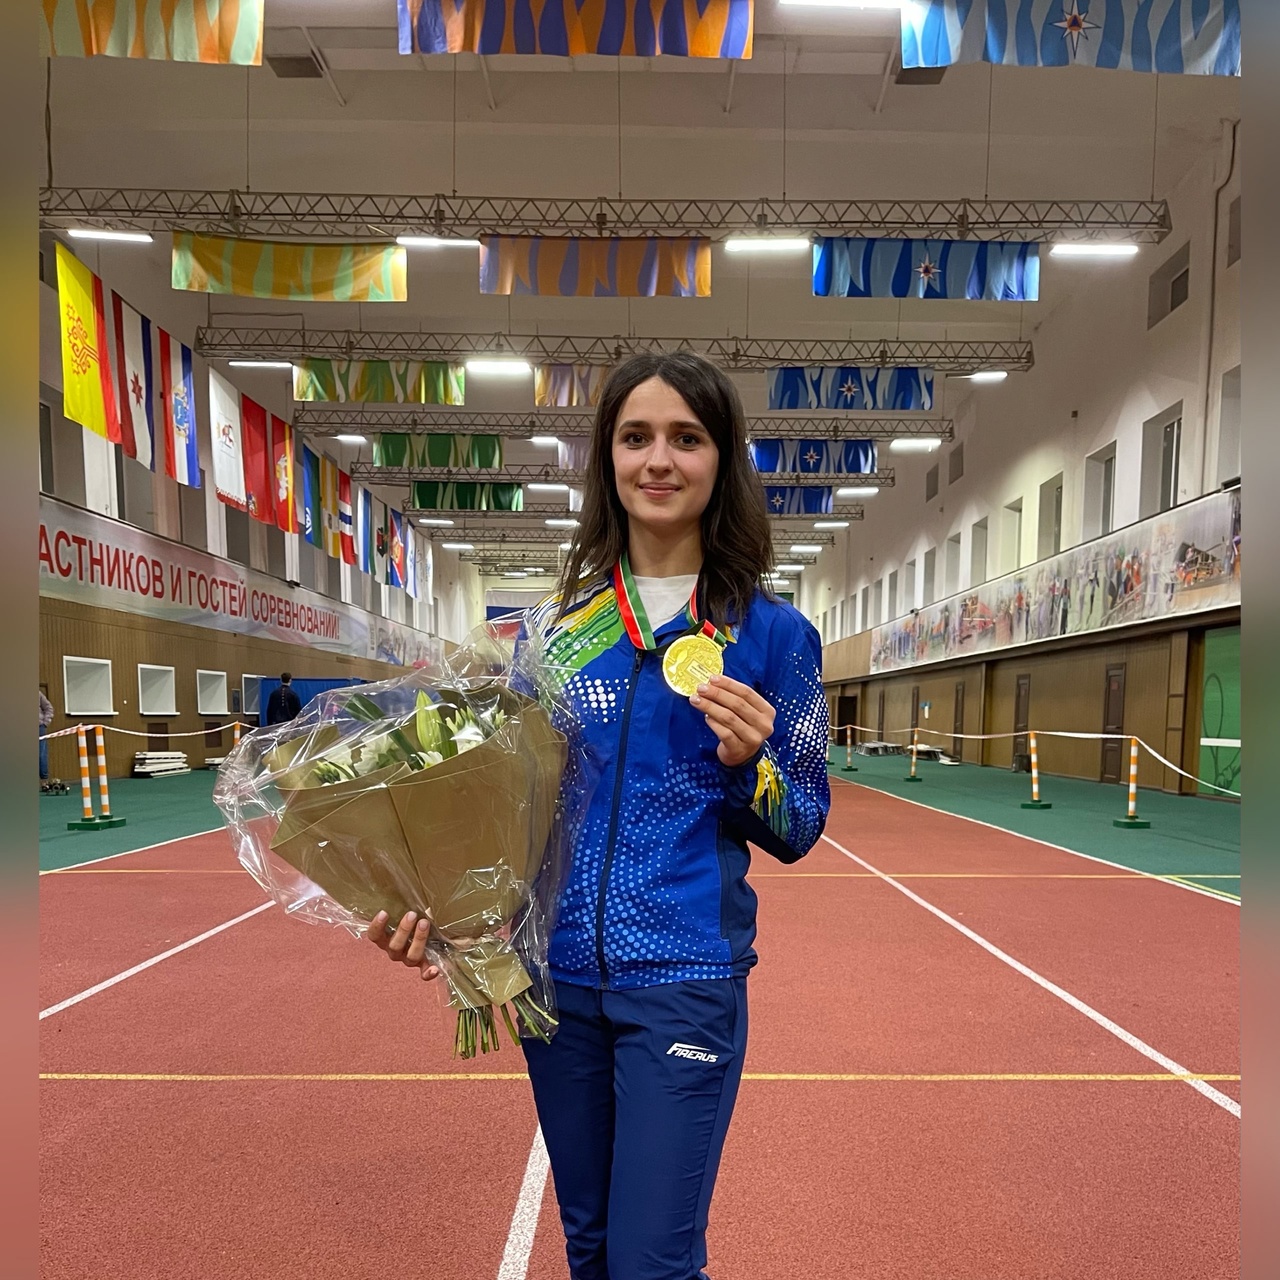 70 медалей в 23 года: спортсменка-МЧСница из Чепецка рассказала об уголке славы и мечтах